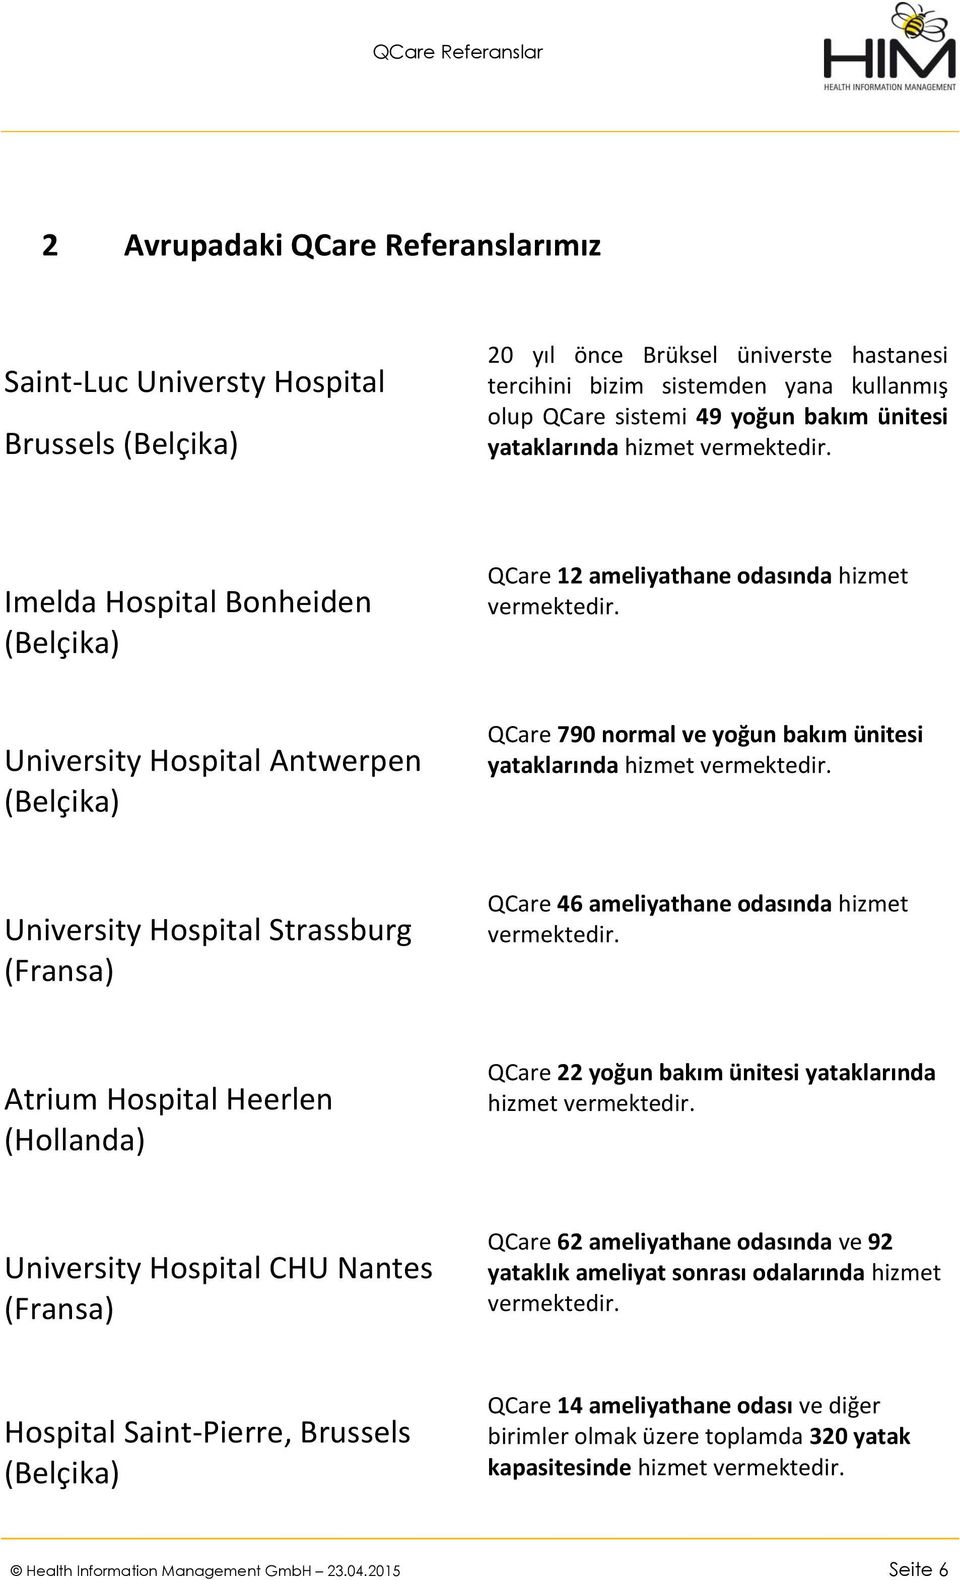 hizmet University Hospital Strassburg (Fransa) QCare 46 ameliyathane odasında hizmet Atrium Hospital Heerlen (Hollanda) QCare 22 yoğun bakım ünitesi yataklarında hizmet University Hospital CHU Nantes